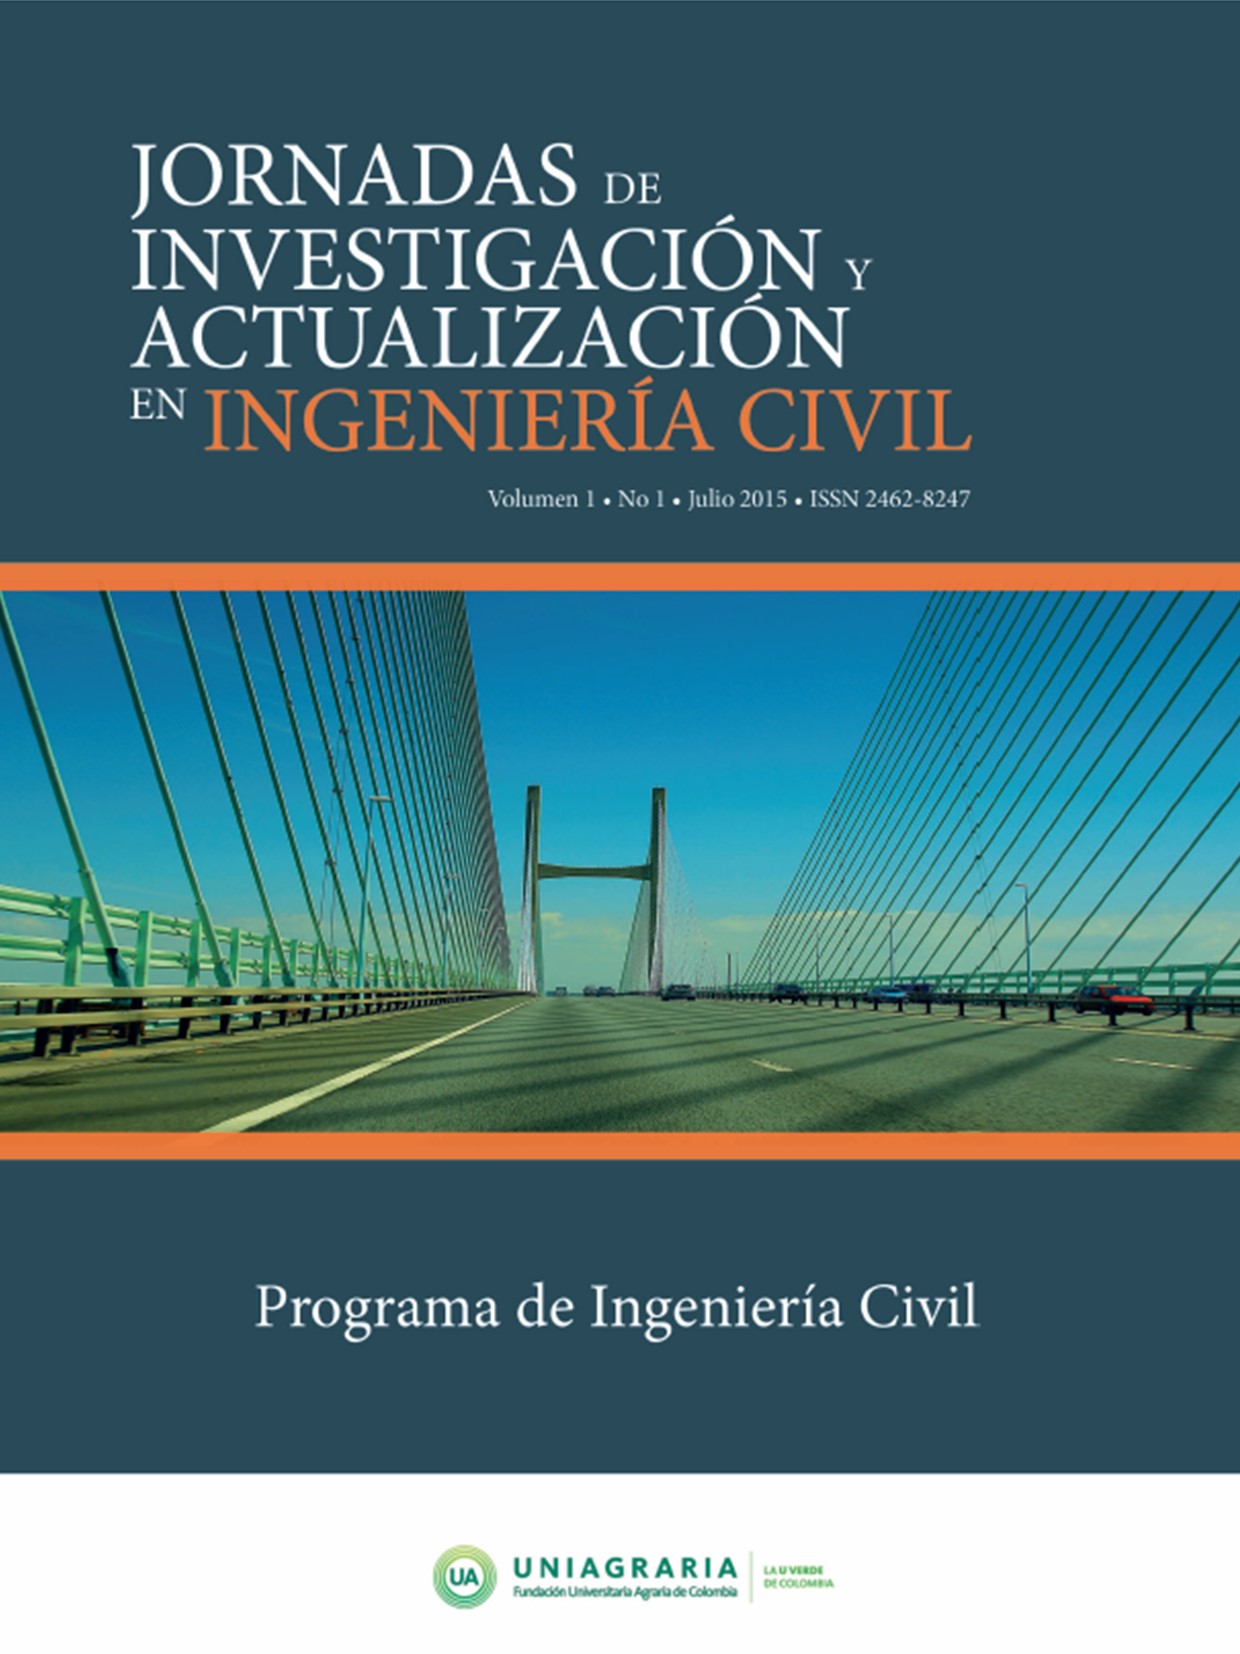 Jornadas de Investigación y Actualización en Ingeniería Civil. Vol 1 N°1 Julio 2015